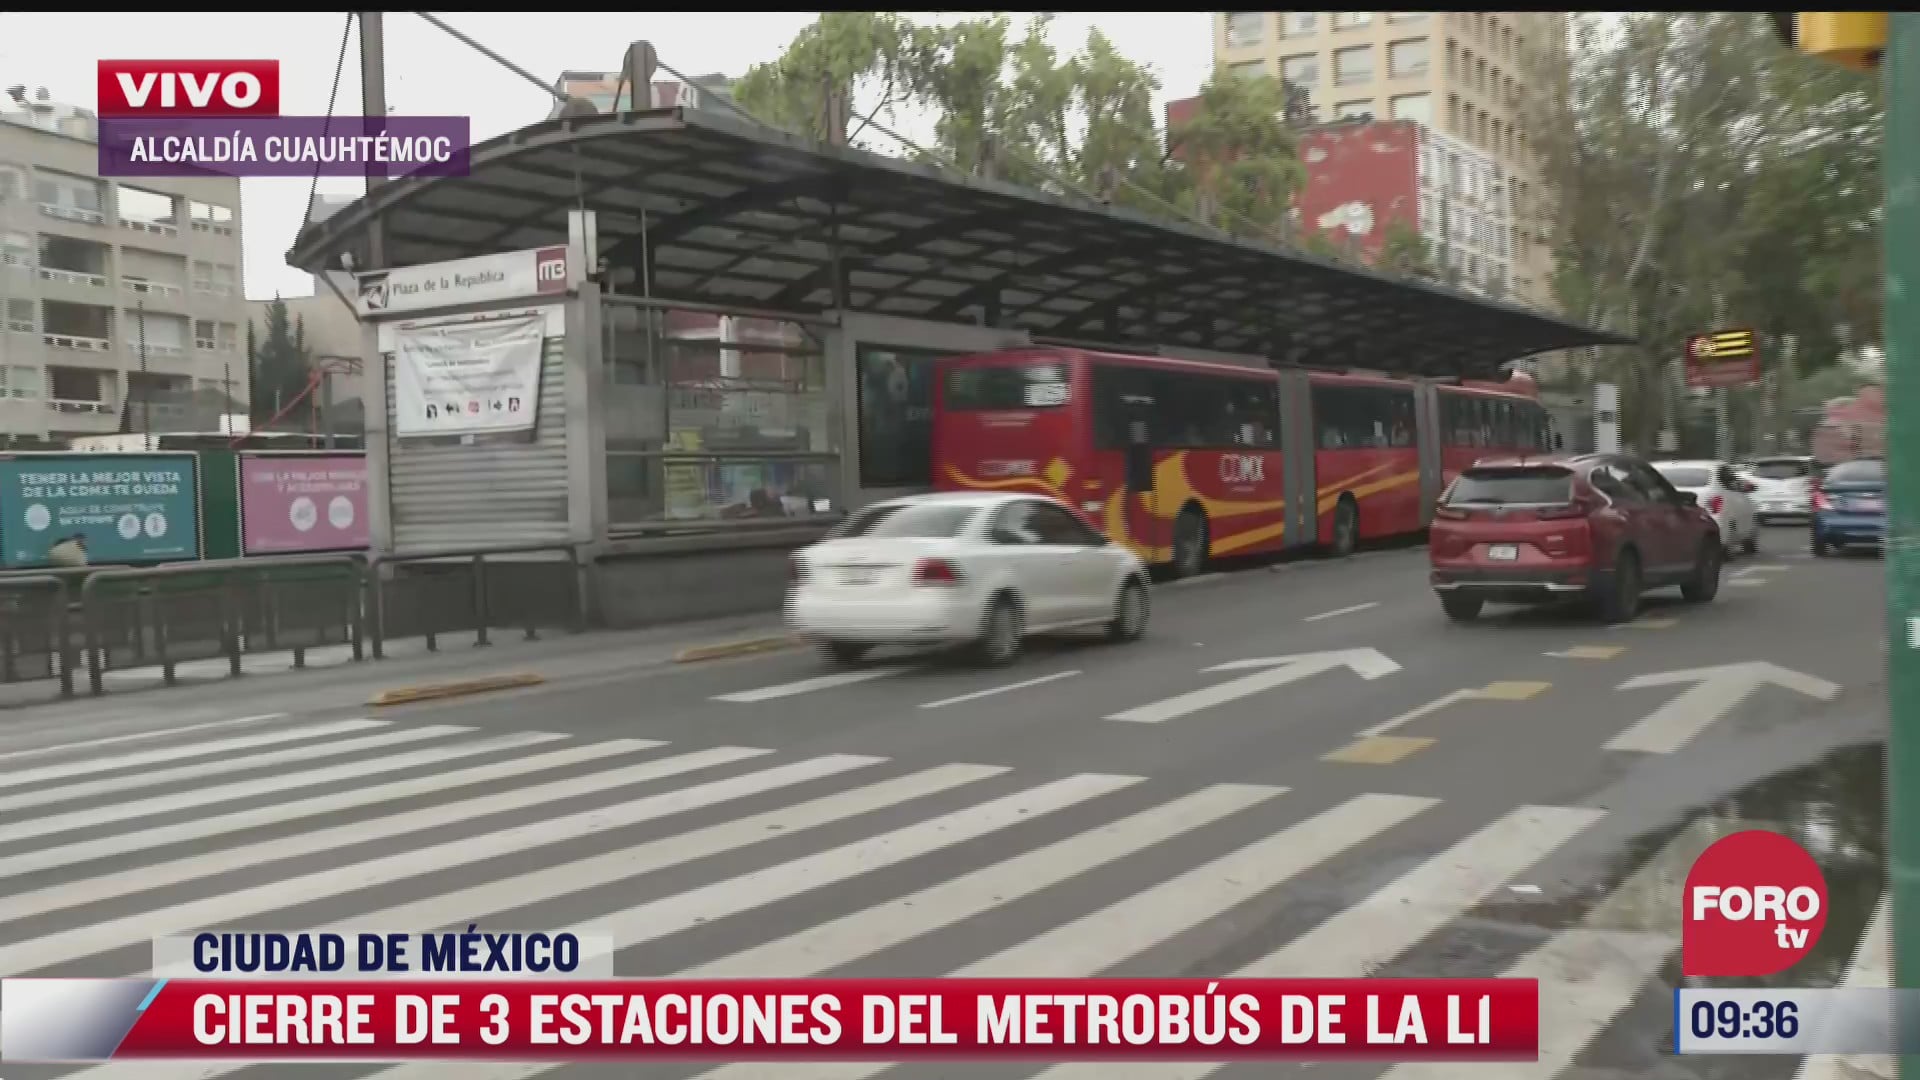 tres estaciones del metrobus de la linea 1 estaran cerradas por mantenimiento